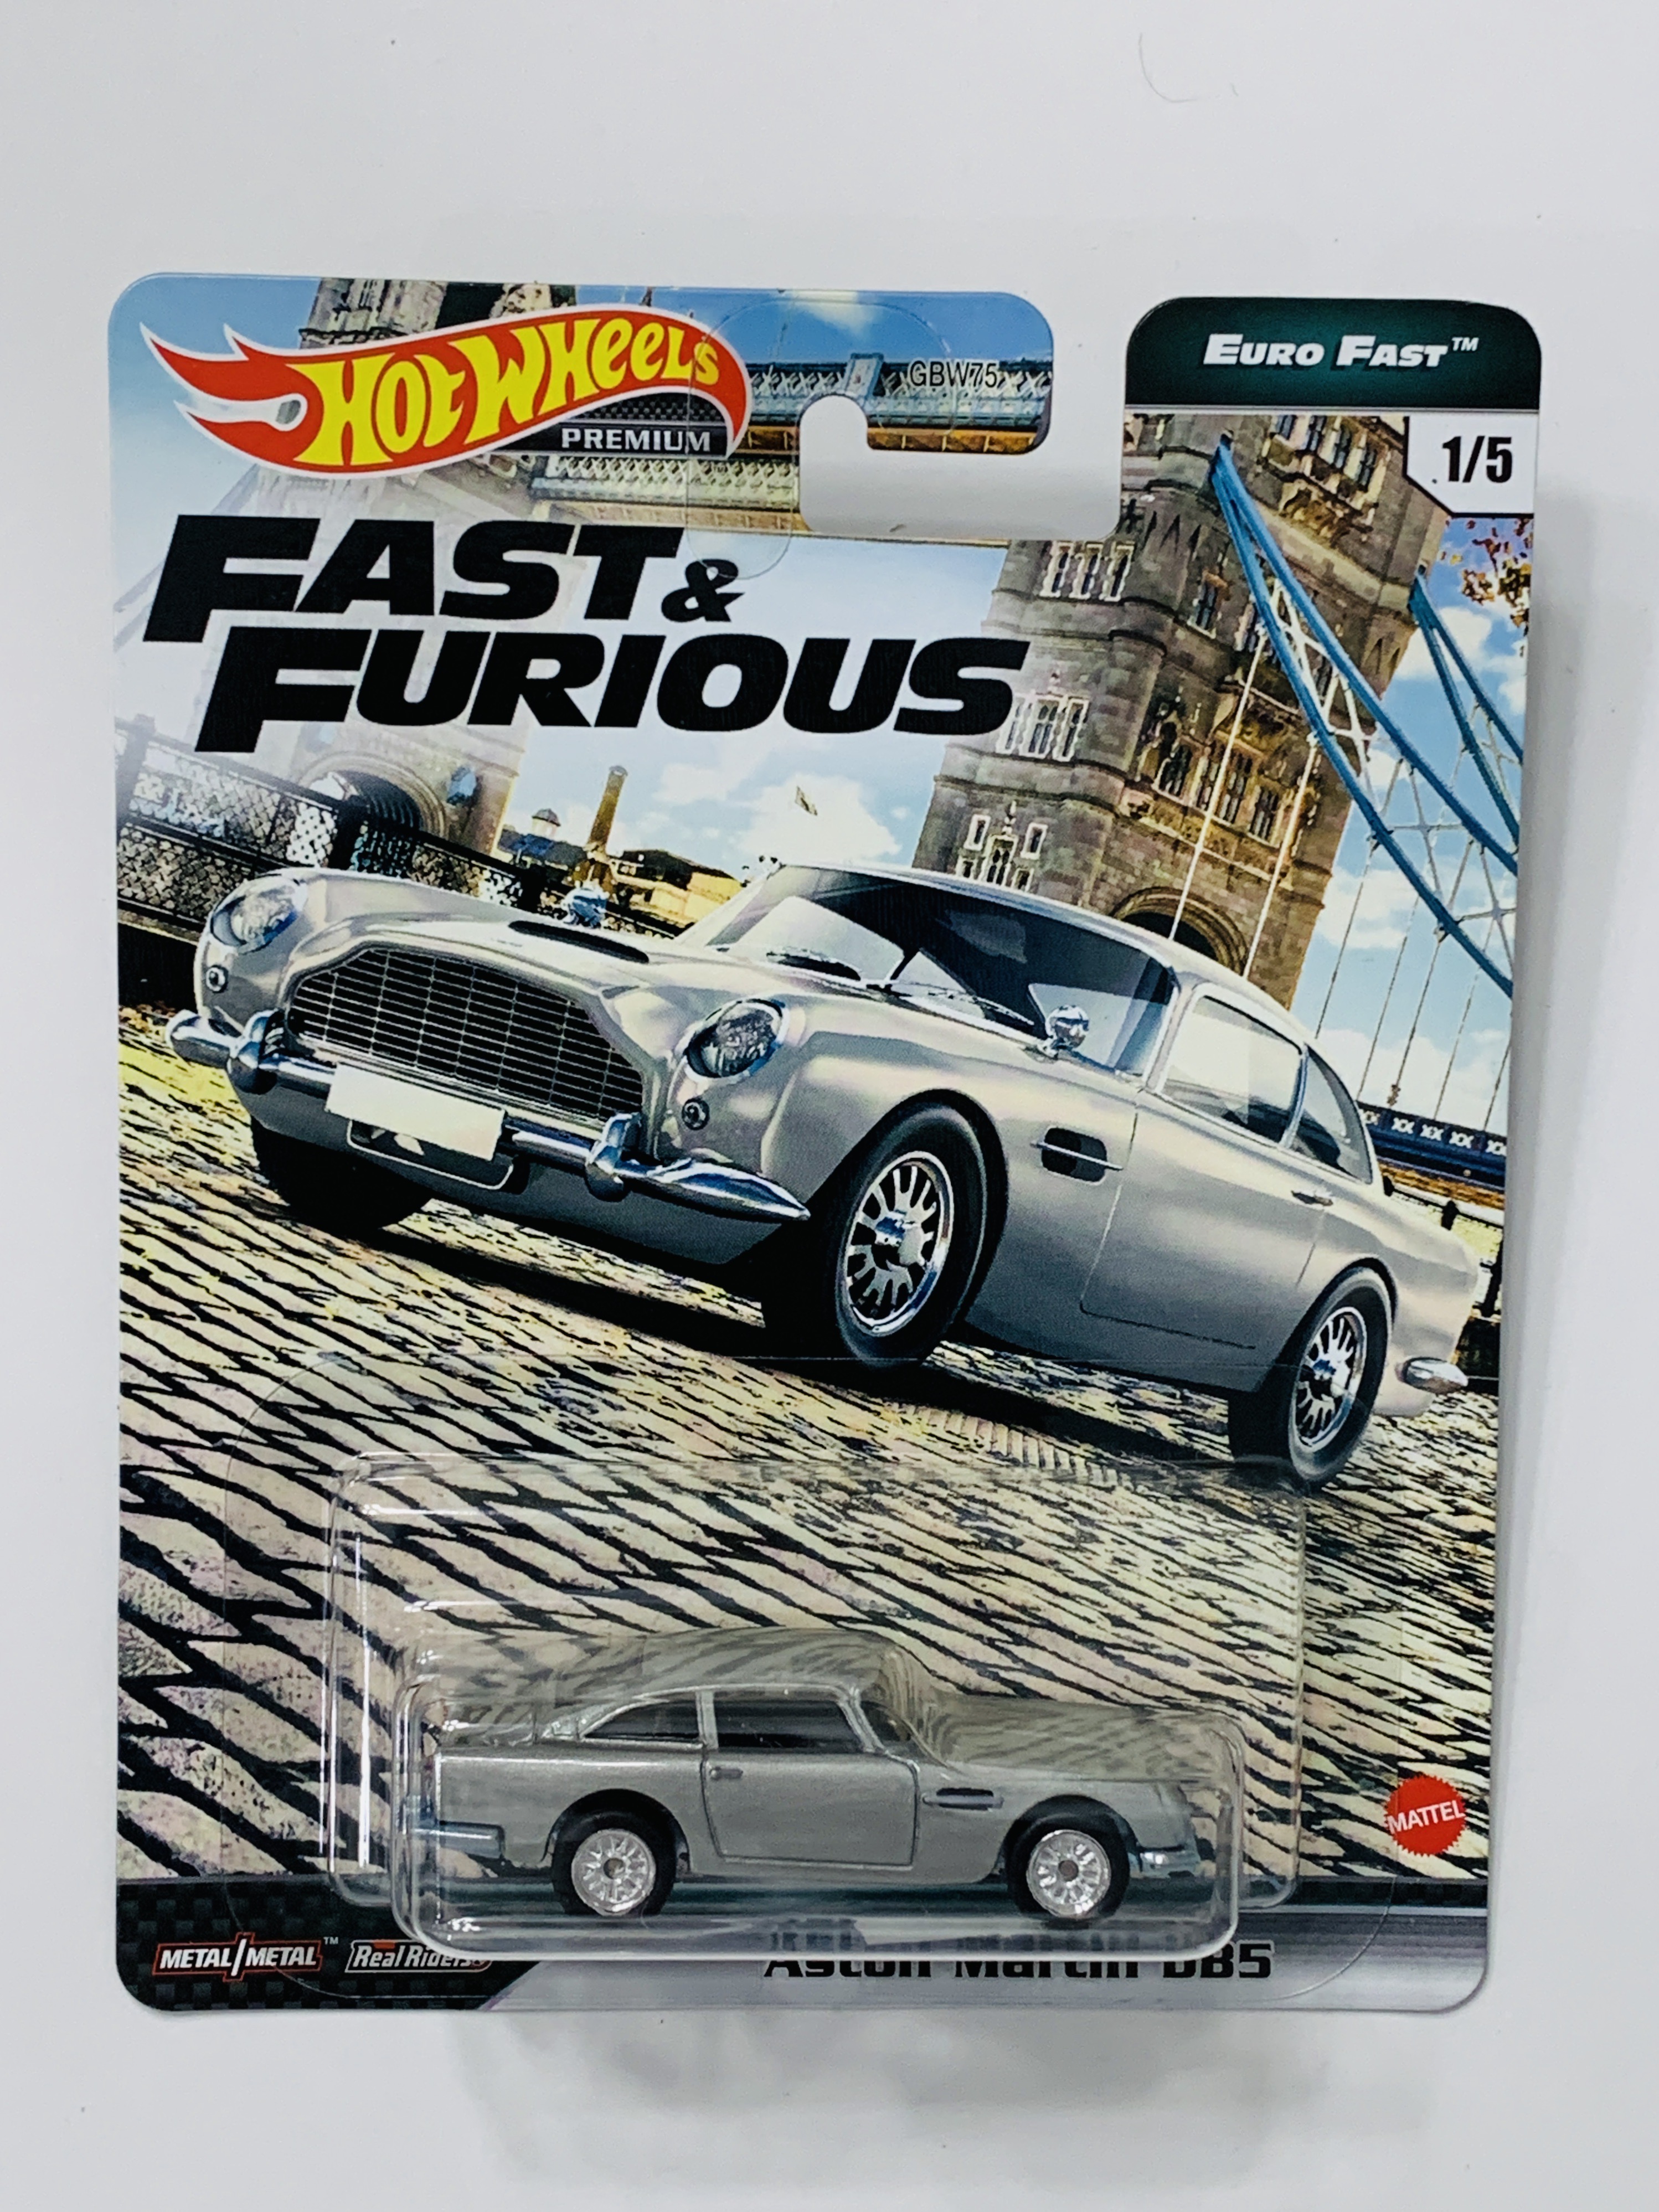 Hot Wheels Premium Fast & Furious Euro Fast Aston Martin DB5